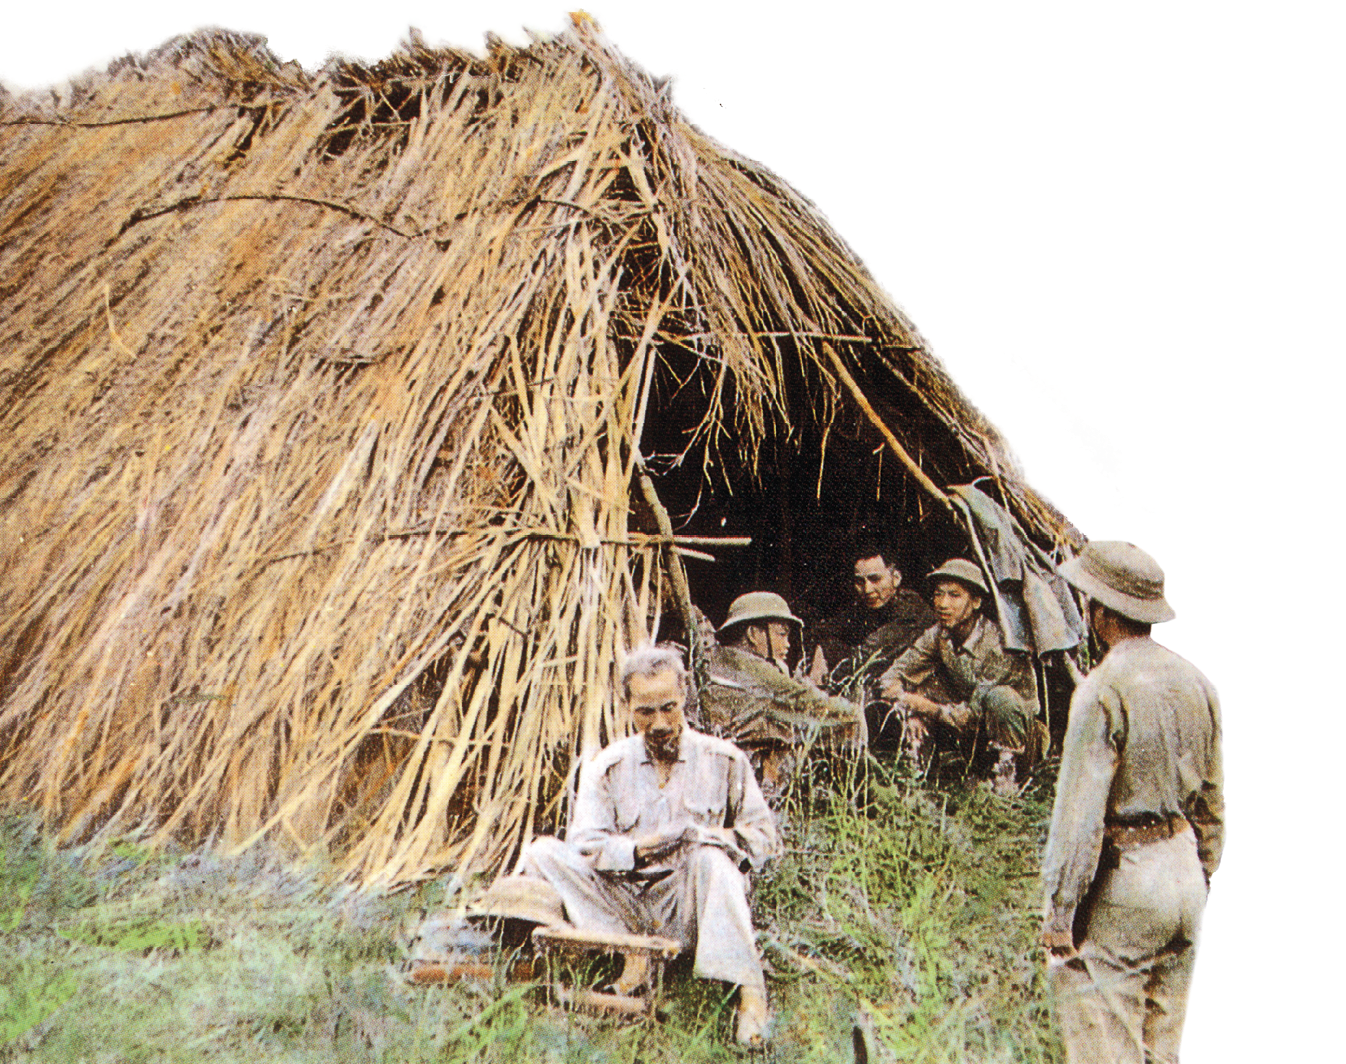 Fotografia. No primeiro plano, um senhor de cabelos brancos, roupas claras e largas está sentado na grama, à frente de uma cabana de palha. Dentro dela, alguns soldados.